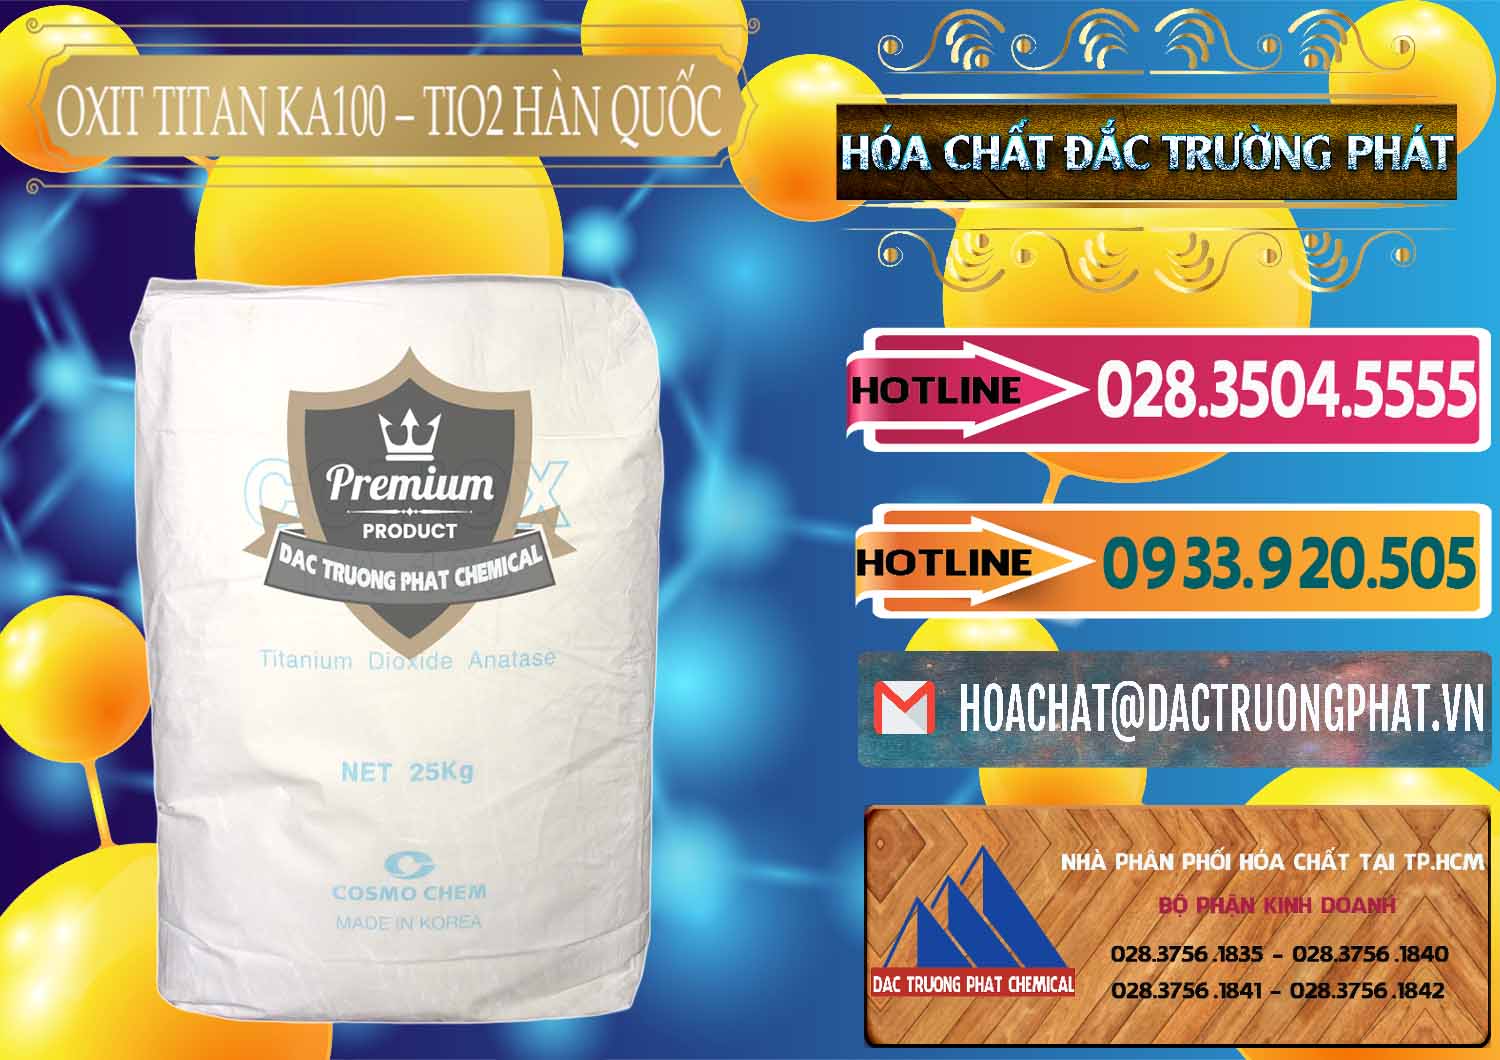 Đơn vị chuyên kinh doanh & bán Oxit Titan KA100 – Tio2 Hàn Quốc Korea - 0107 - Nhà cung cấp và nhập khẩu hóa chất tại TP.HCM - dactruongphat.vn